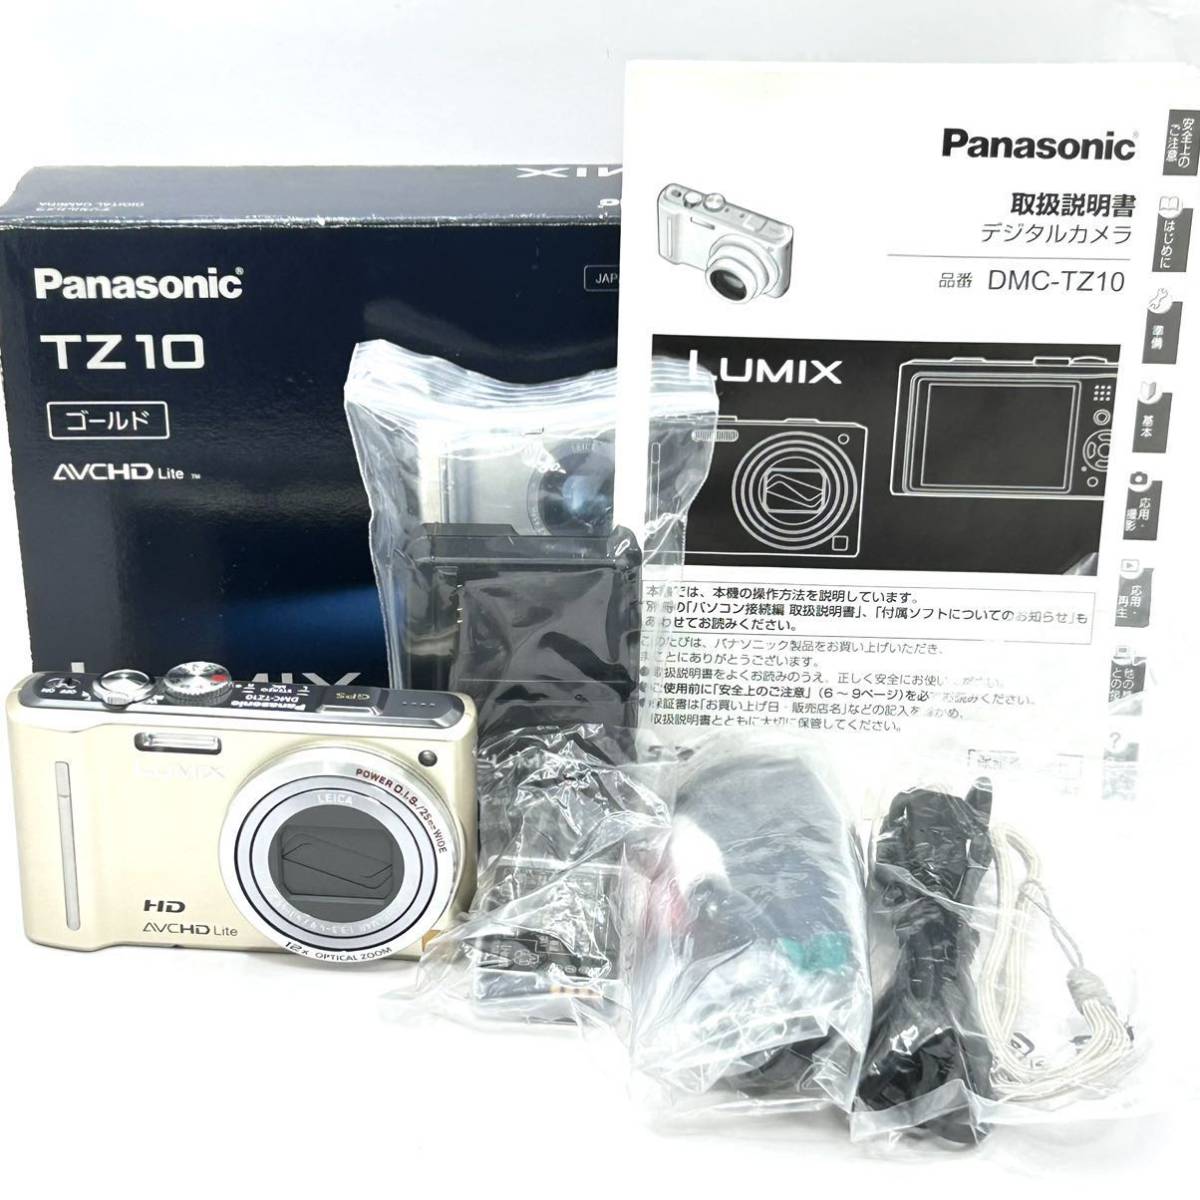 ★極上品★パナソニック Panasonic LUMIX DMC-TZ10 ゴールド ★付属品多数★ LL635#947